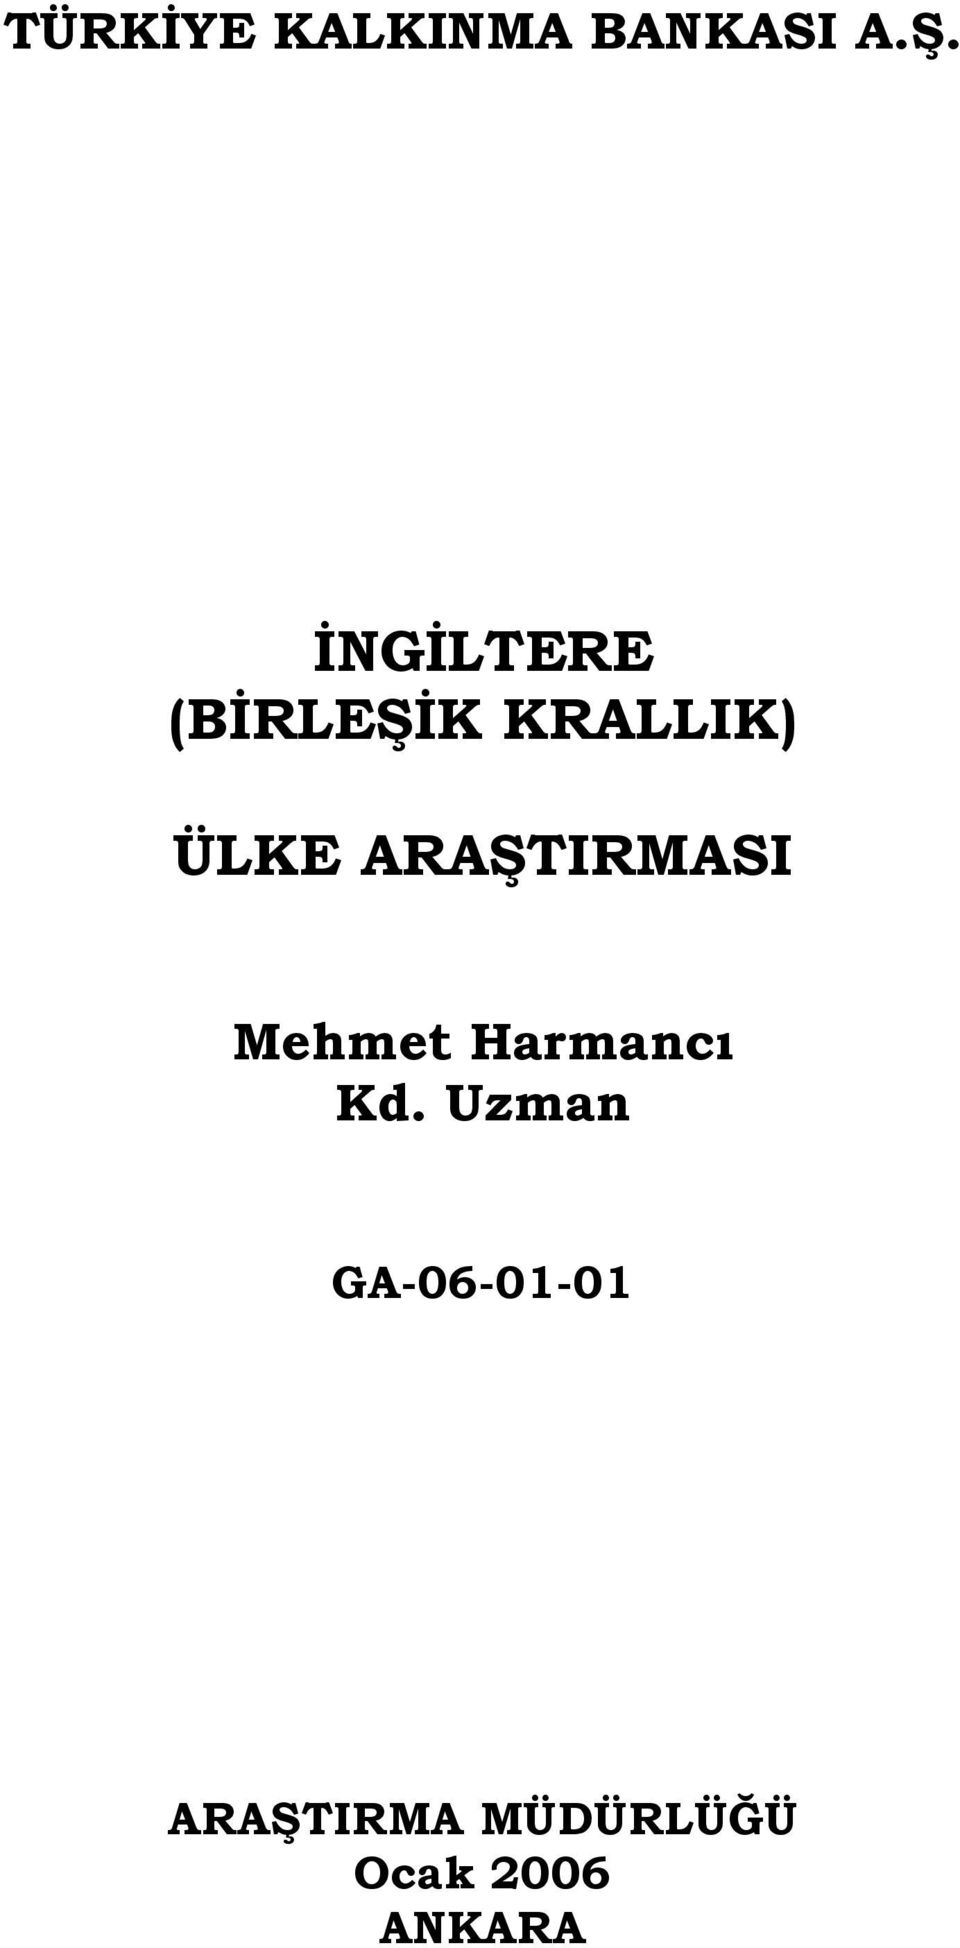 ARAŞTIRMASI Mehmet Harmancı Kd.